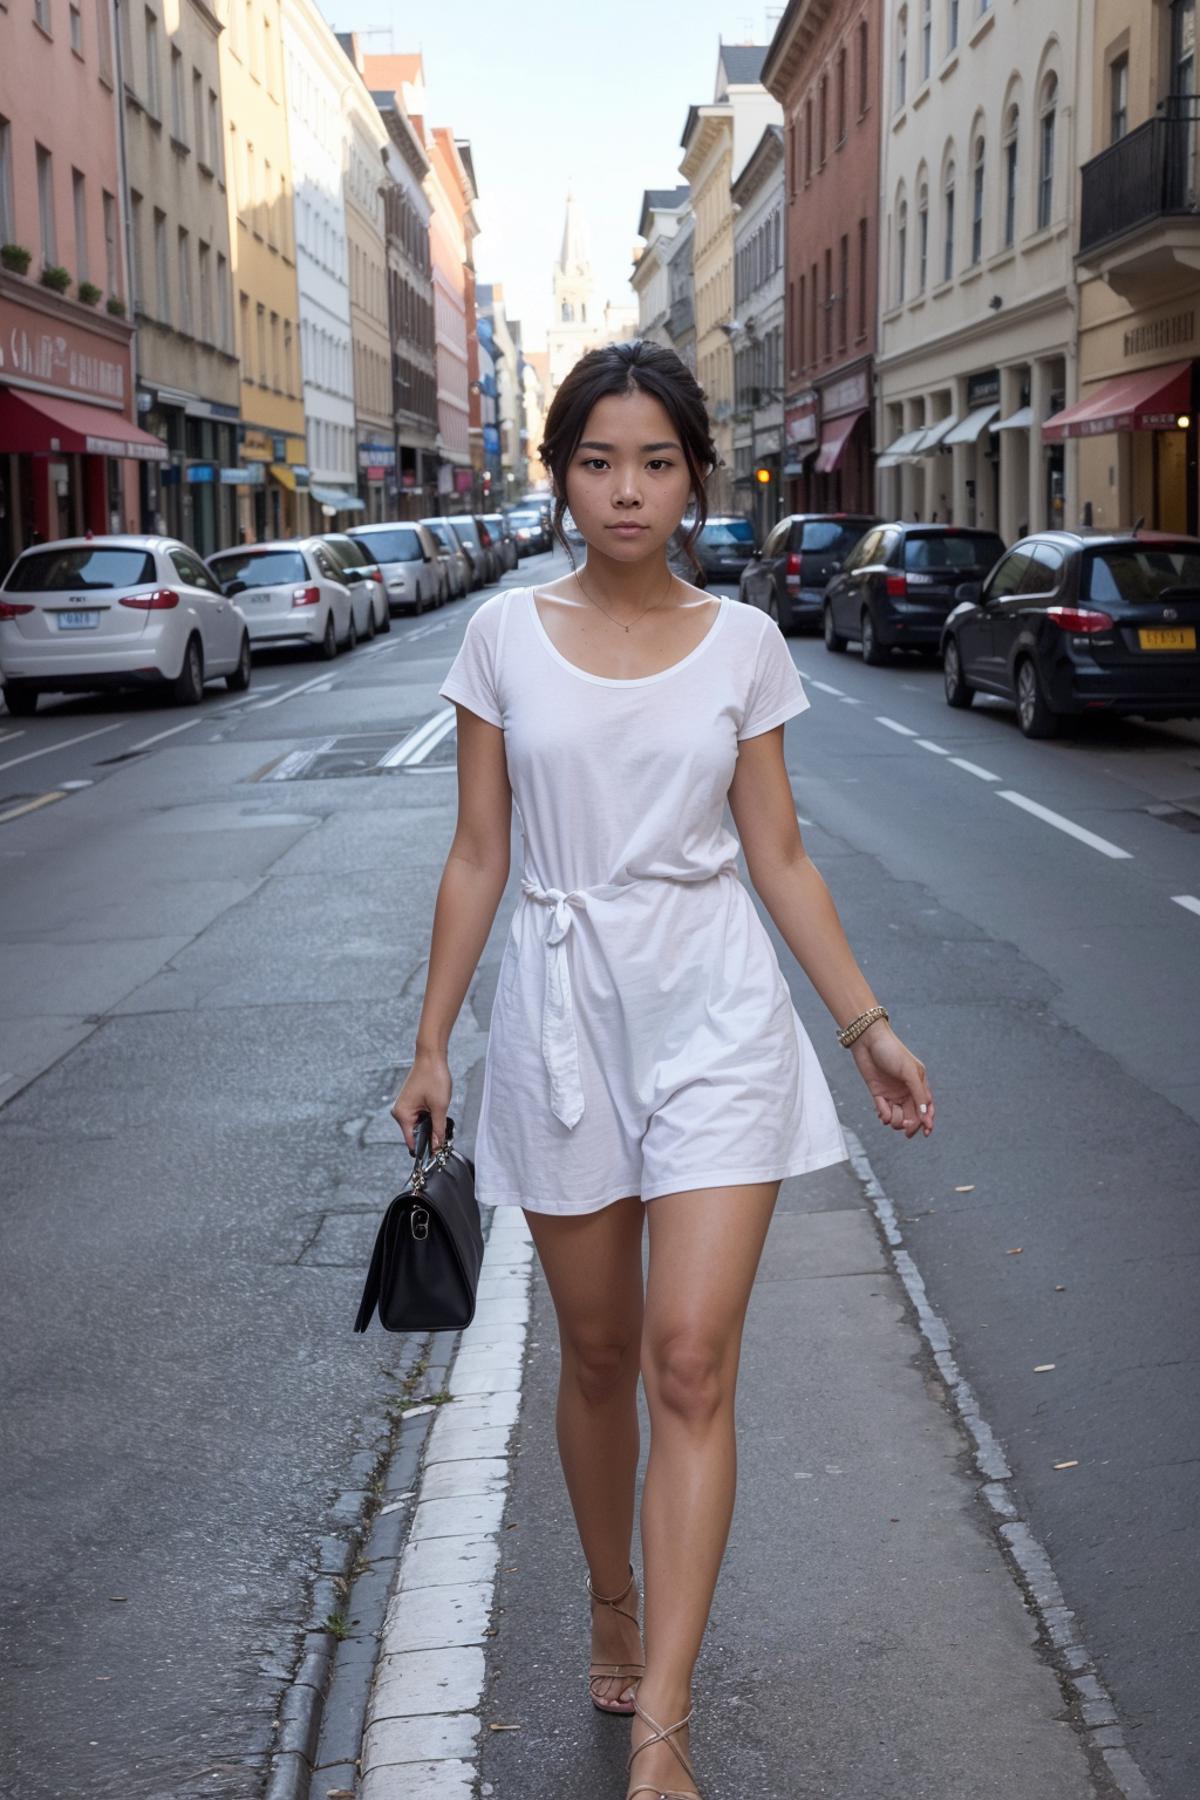 A woman in a white dress walking down a city street.